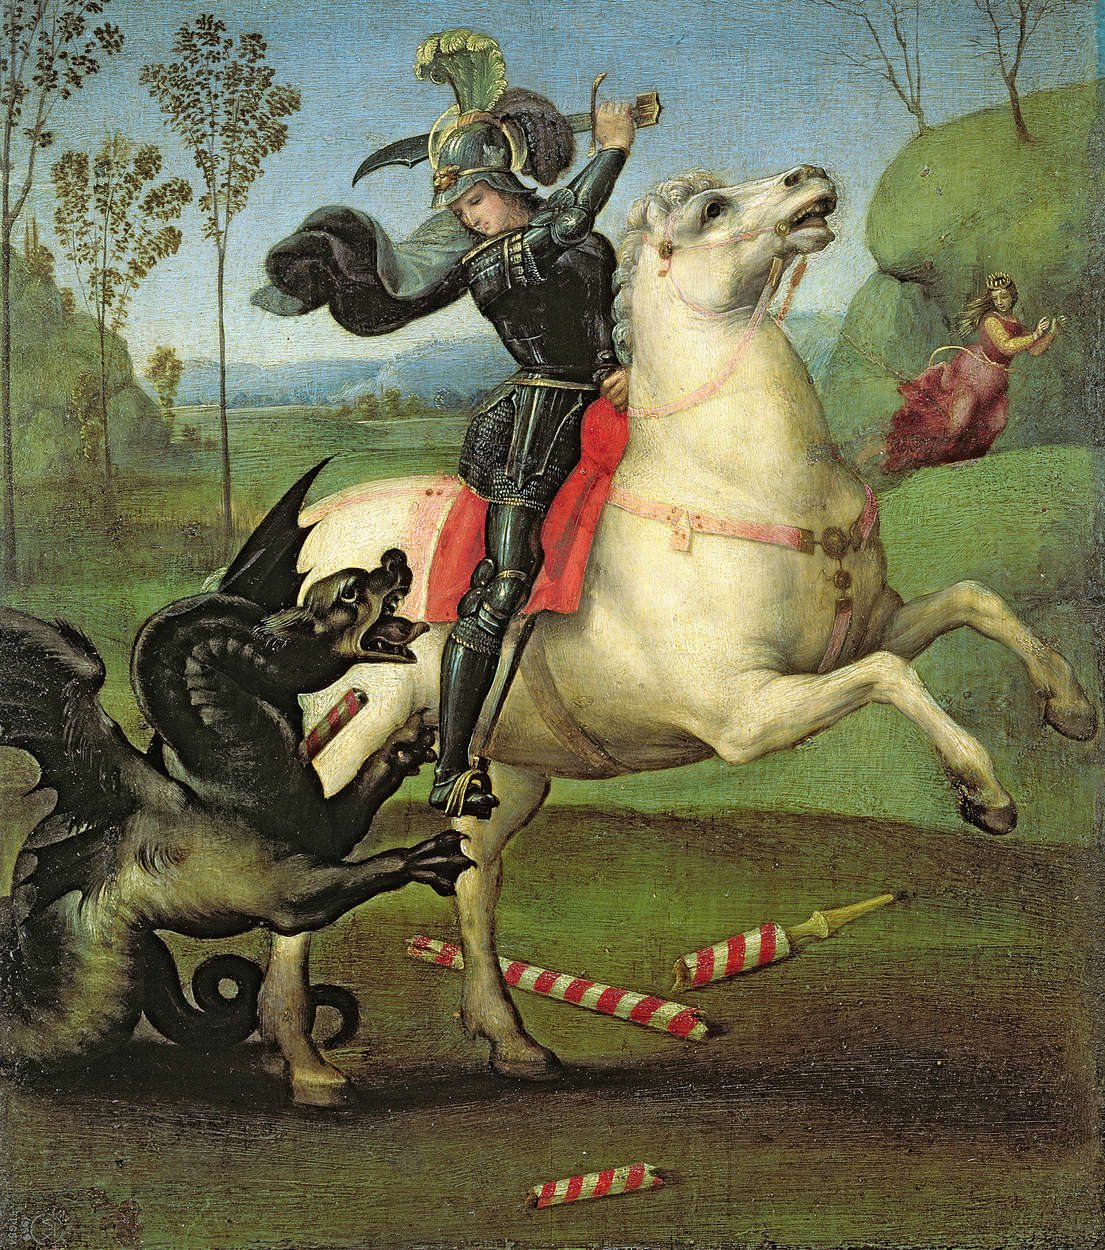             Fototapete "St. Georg im Kampf mit dem Drachen" von Raphael
        